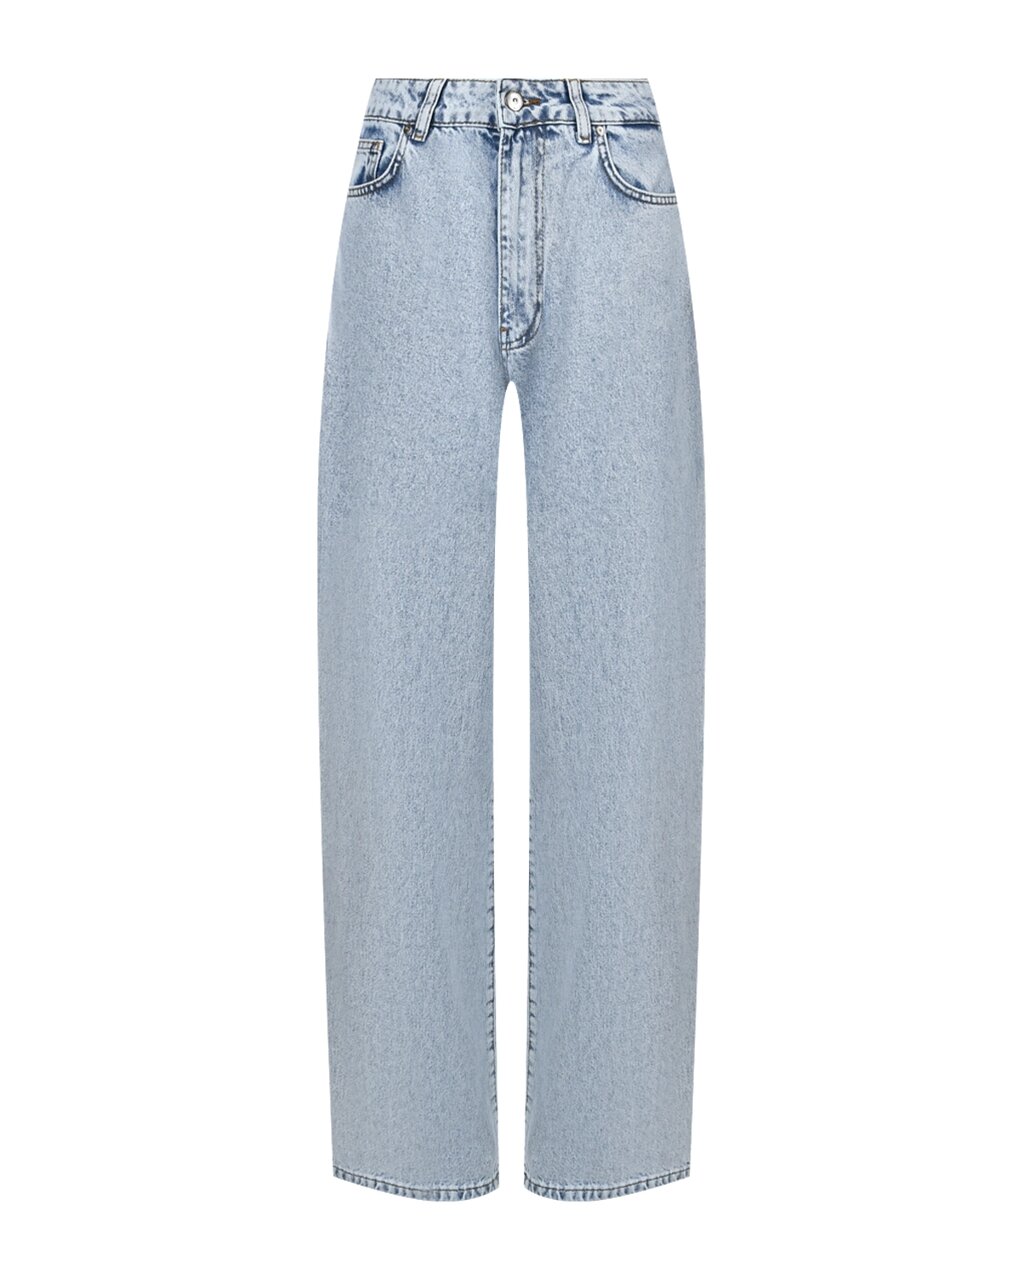 Базовые прямые джинсы ALINE от компании Admi - фото 1